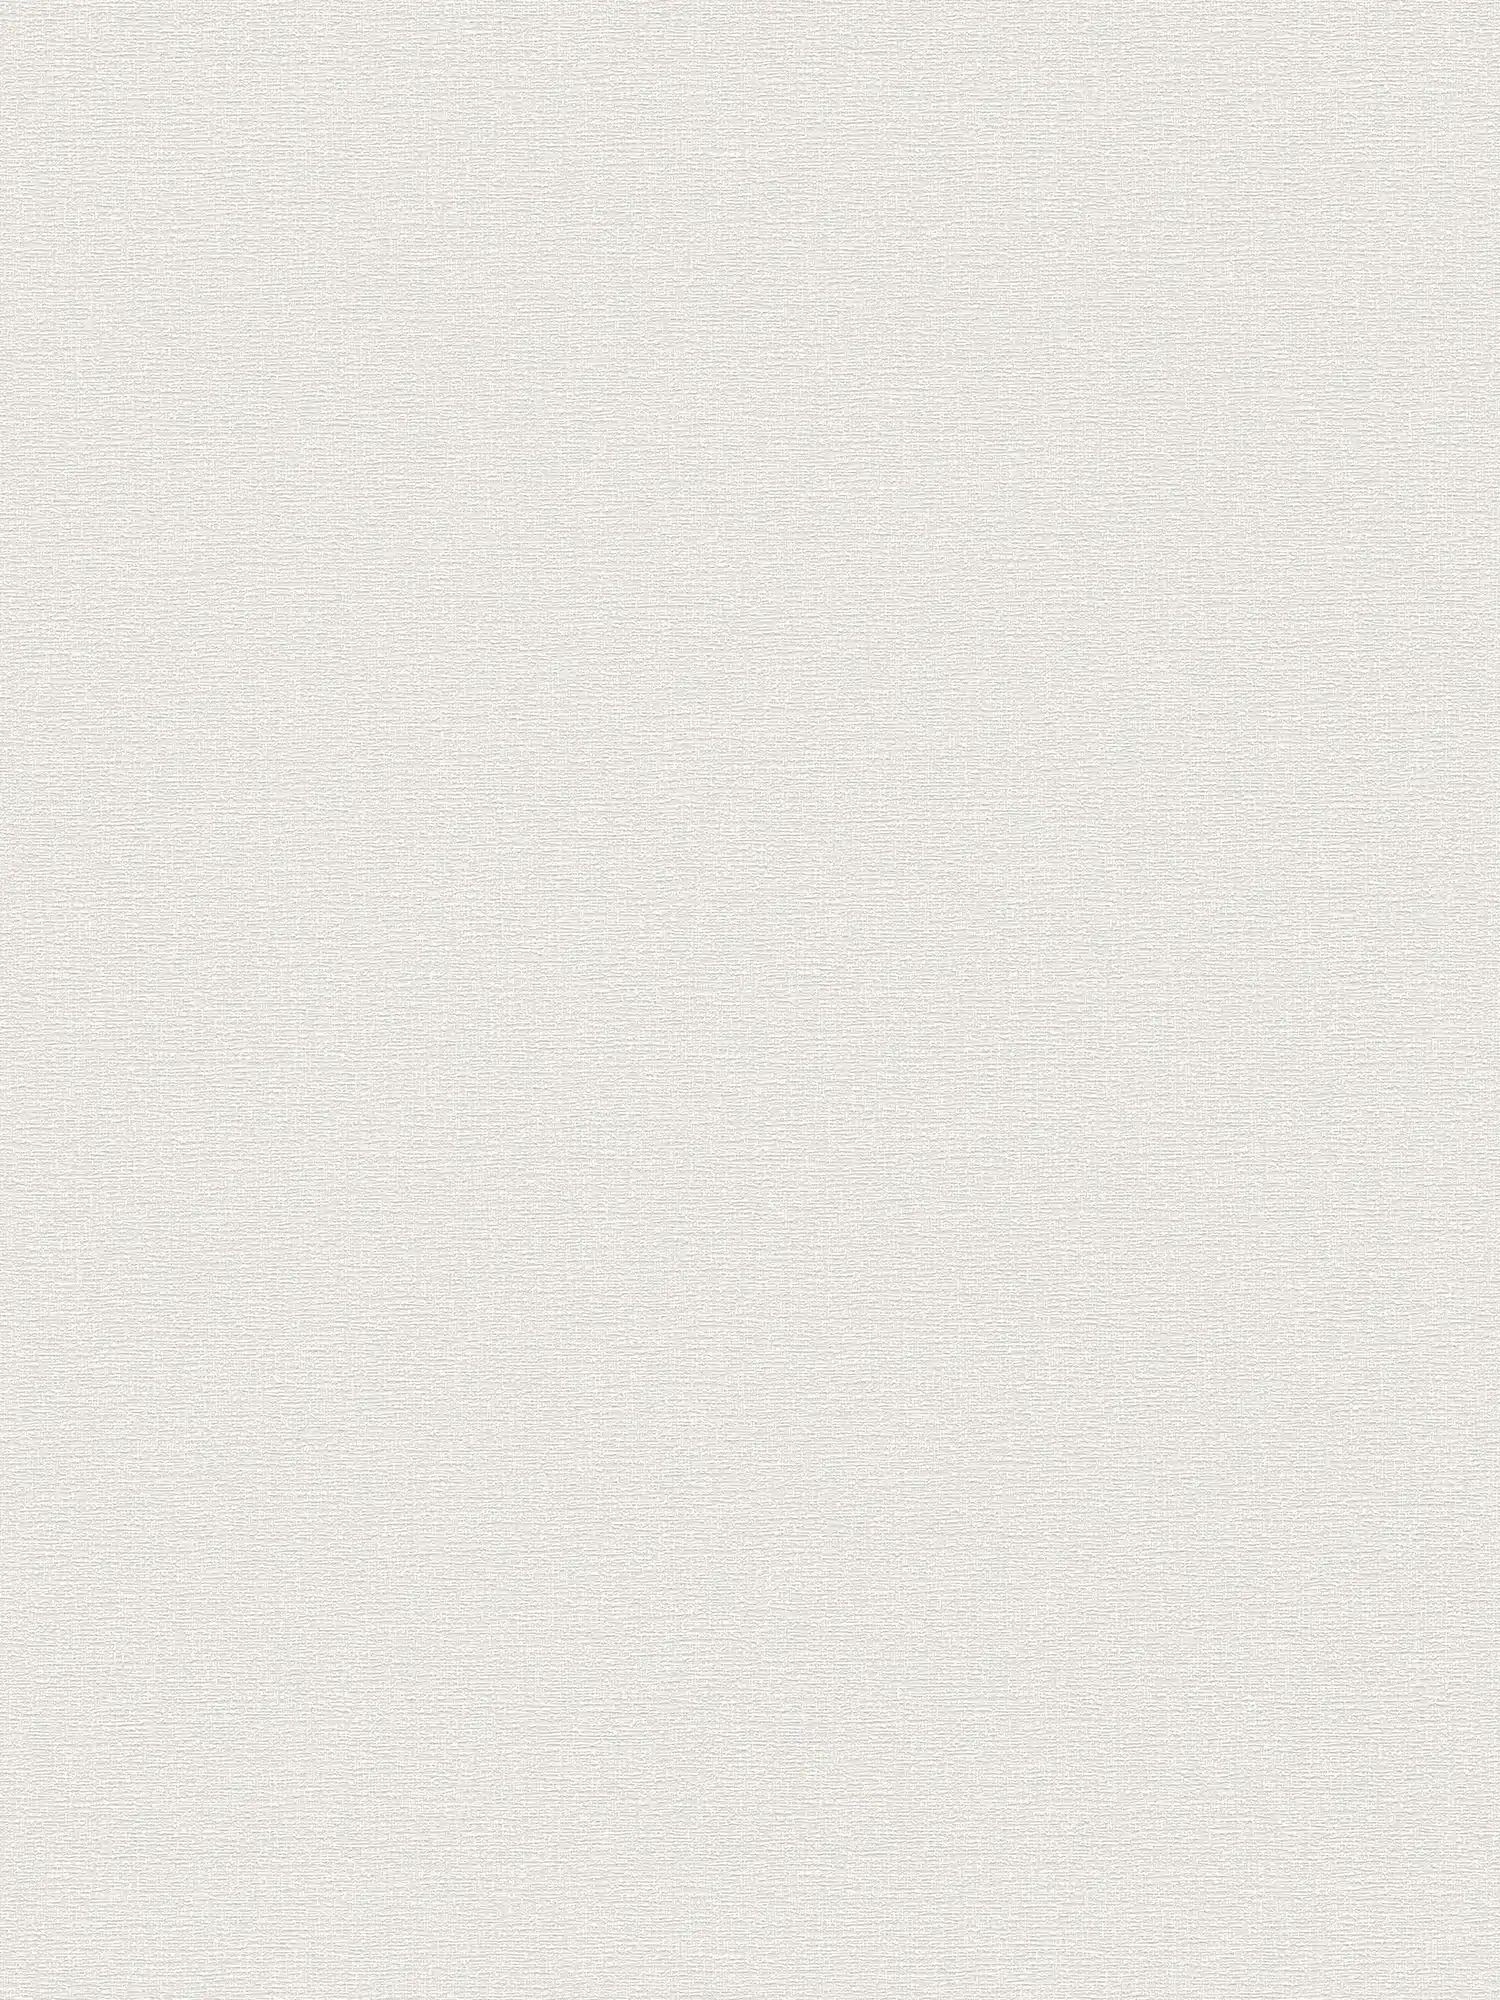 papier peint en papier uni dans une teinte simple - gris clair, crème
